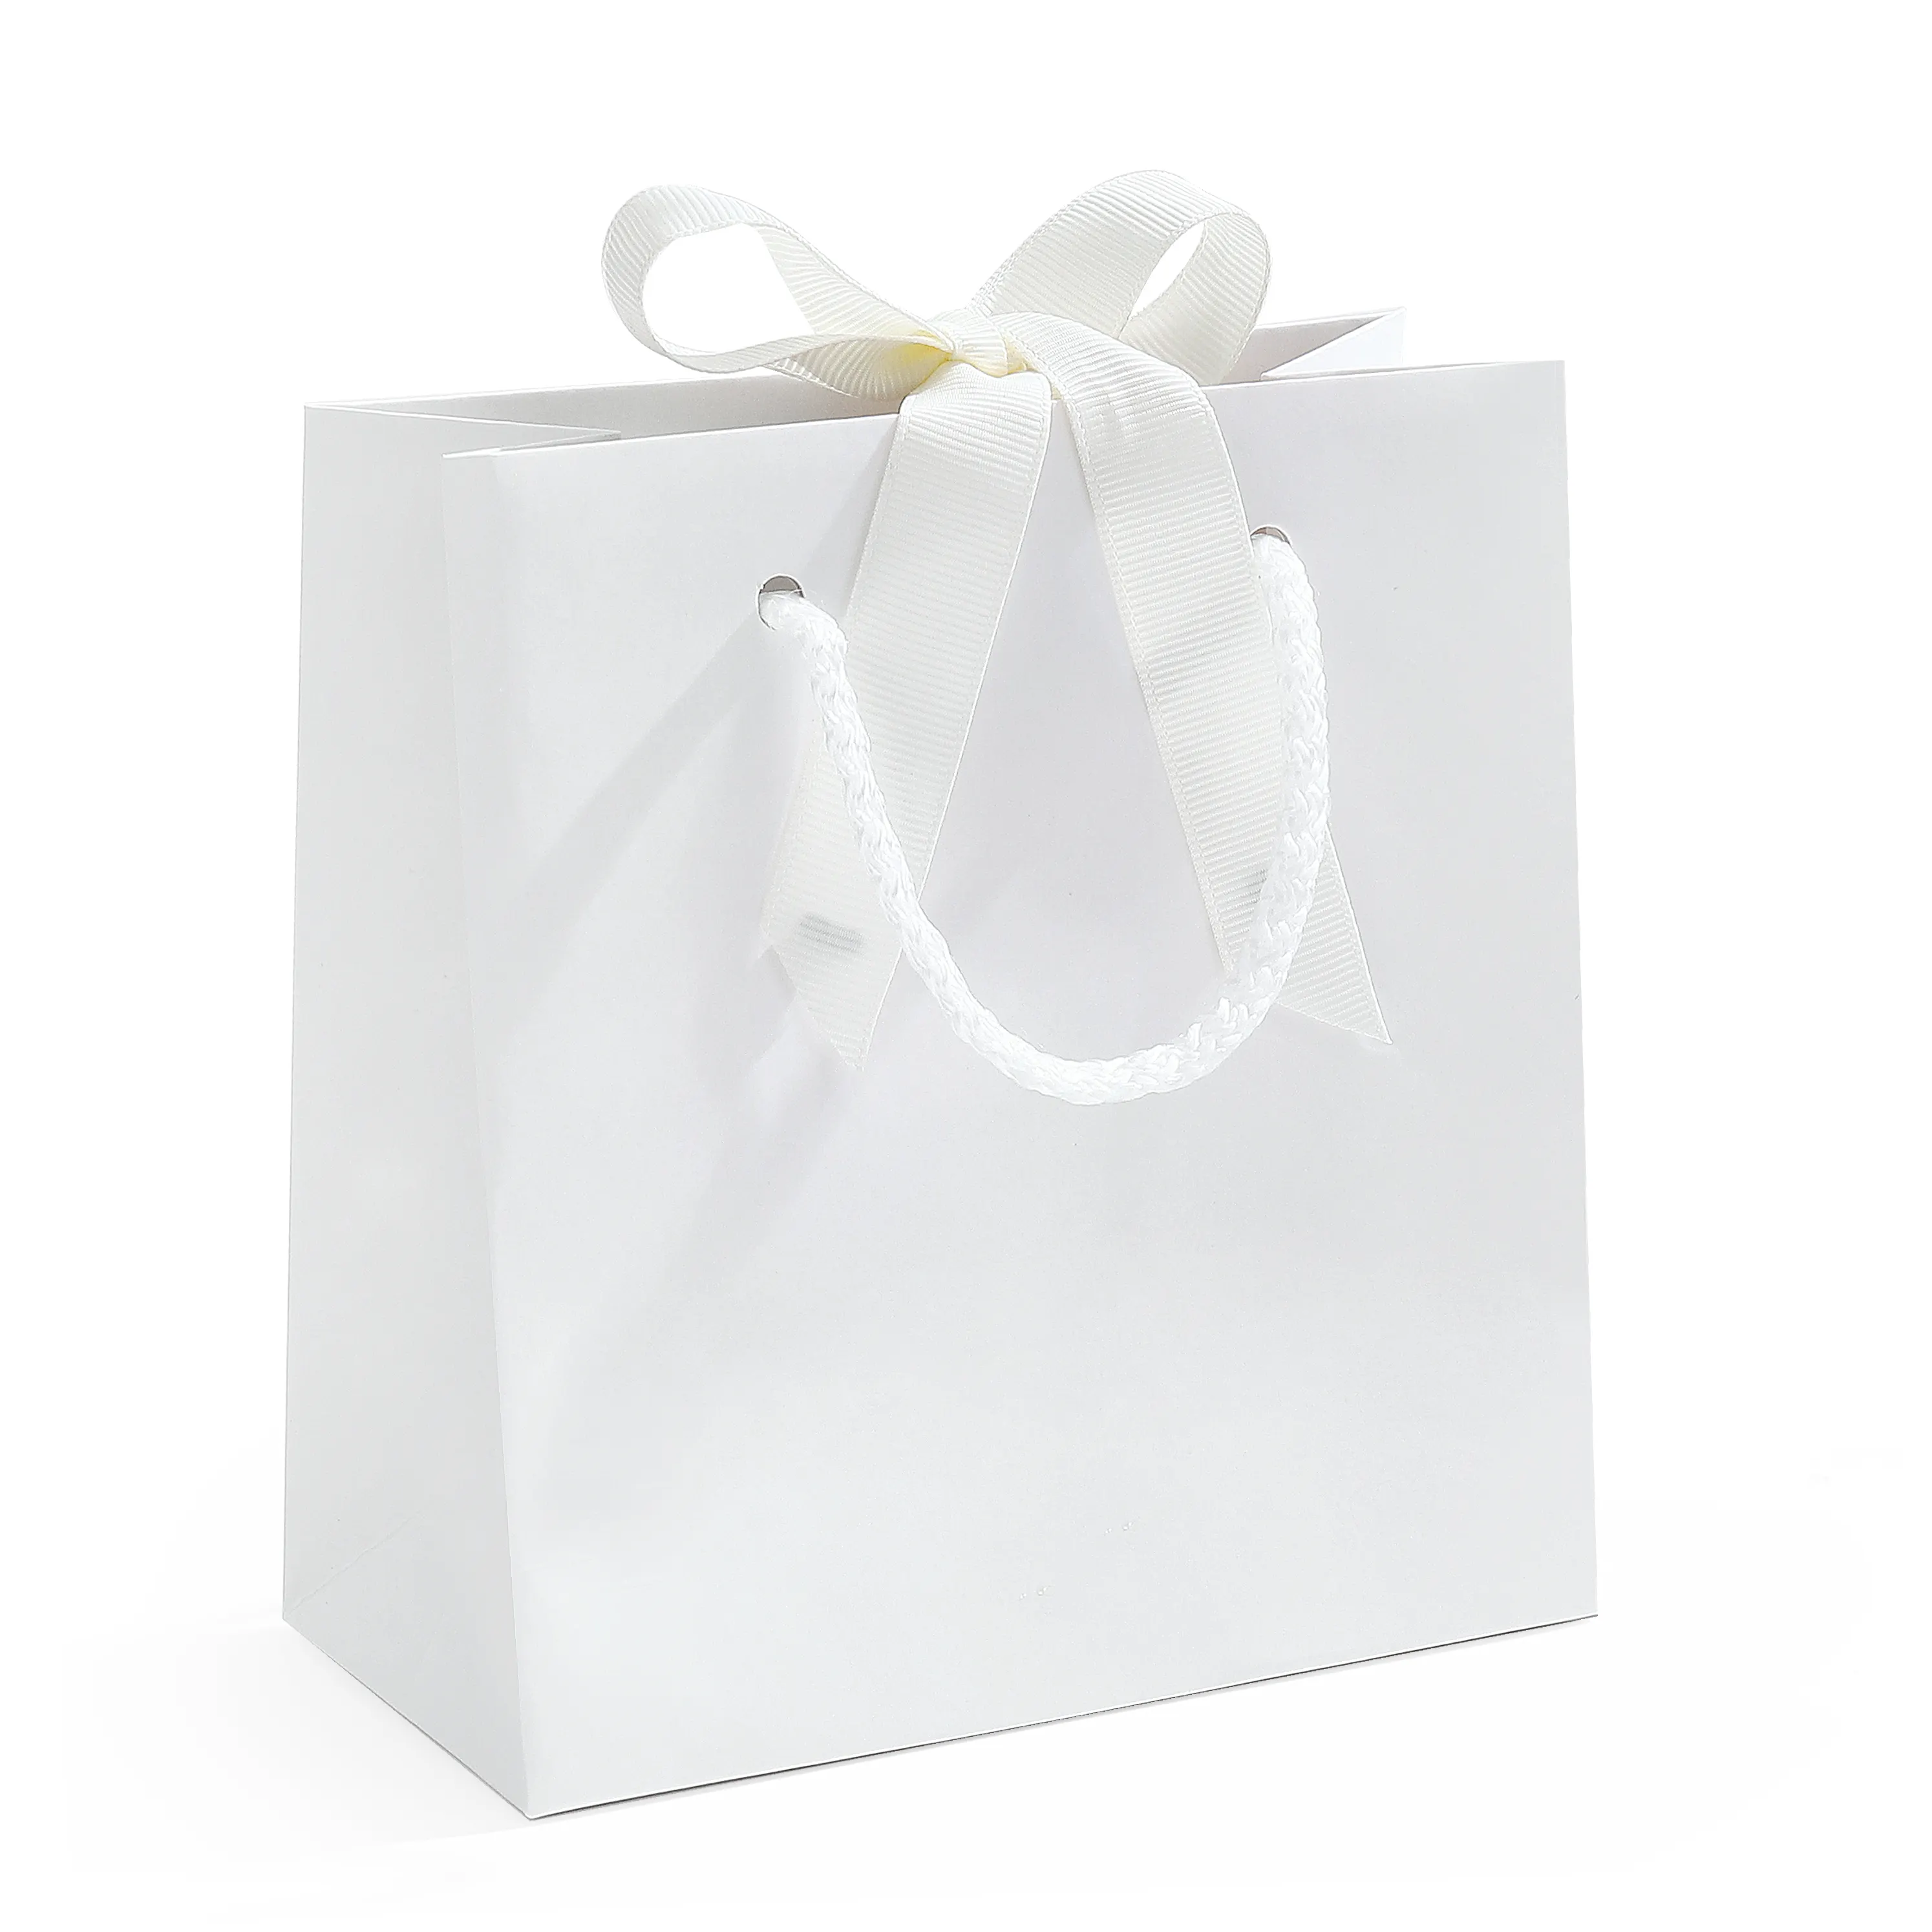 Spot sacs en papier pour la protection de l'environnement sacs à main vierges réutilisables blanc attaché emballage cadeau vente en gros sacs en papier à provisions